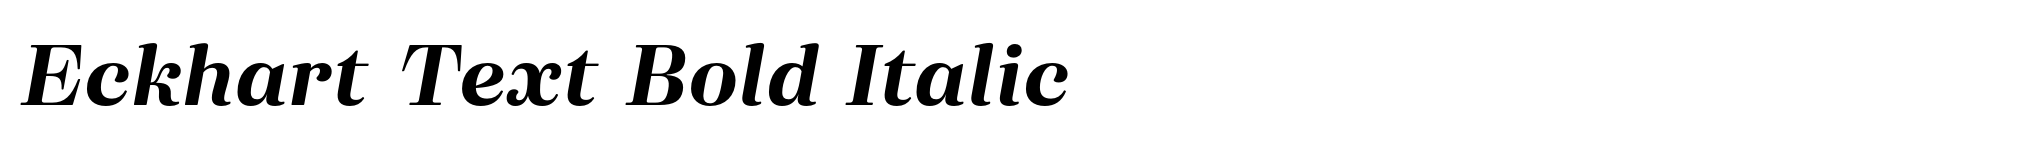 Eckhart Text Bold Italic image